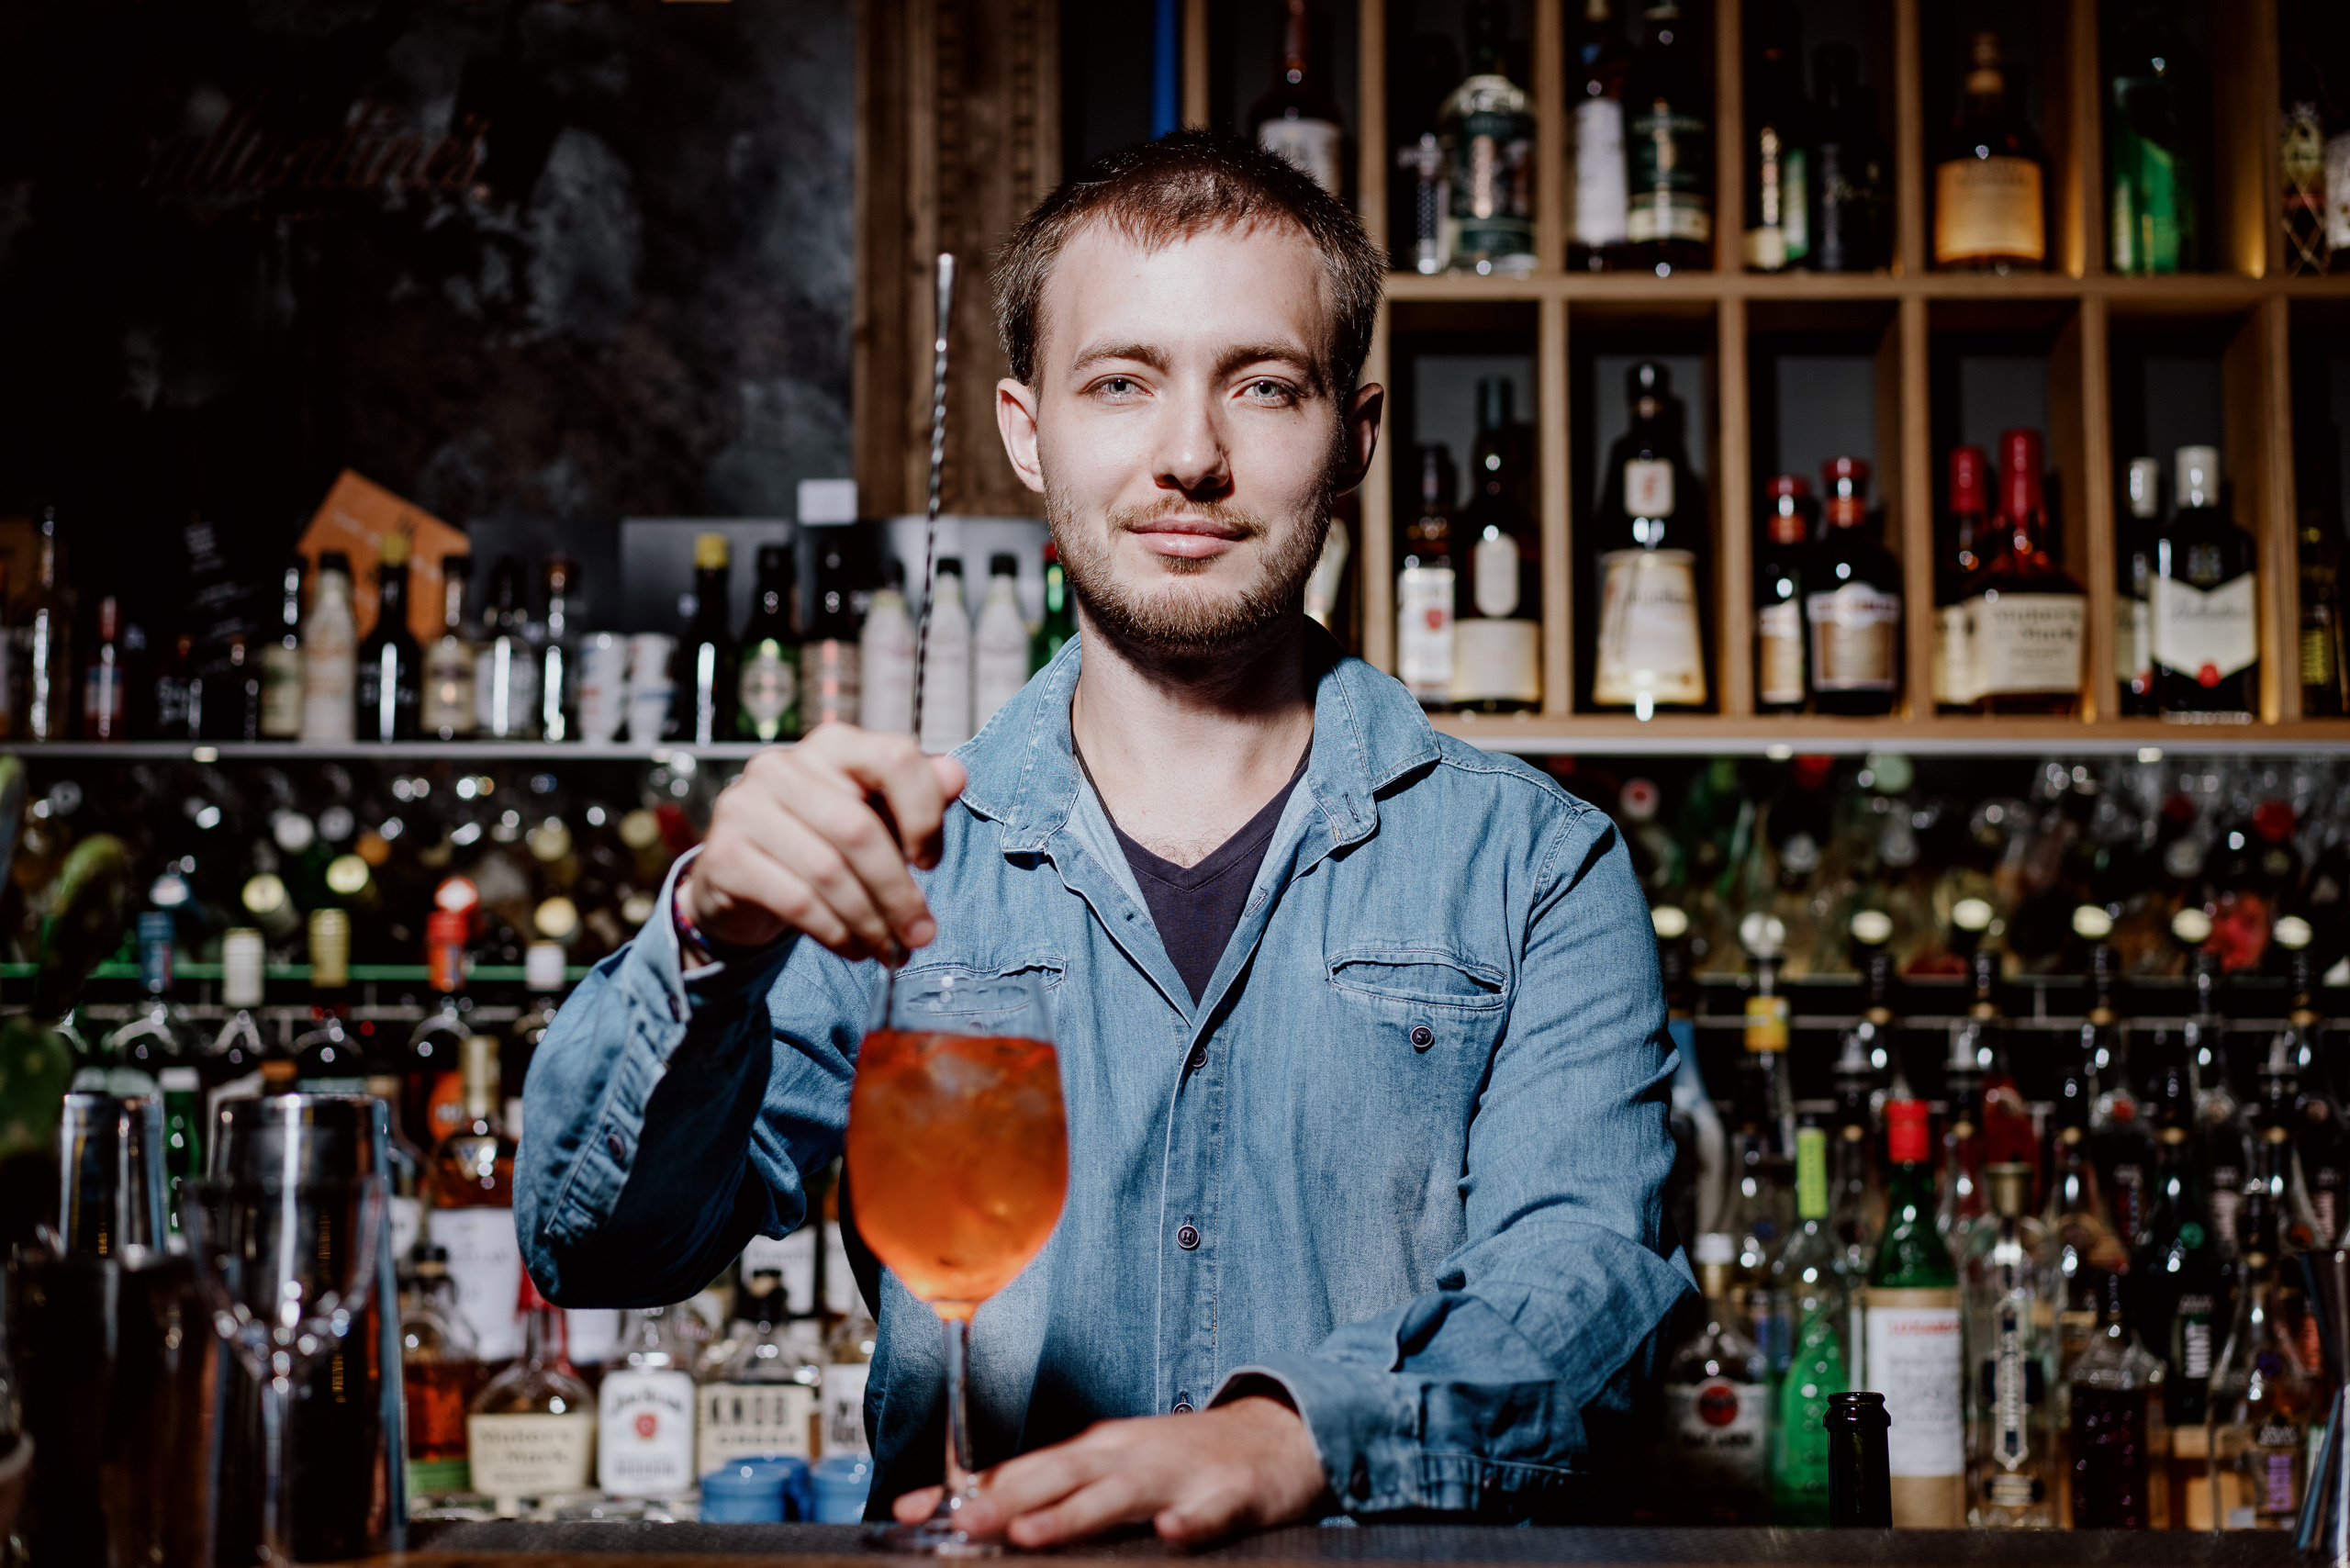 Дмитрий Котельников начал работать бариста, но затем перешел за бар